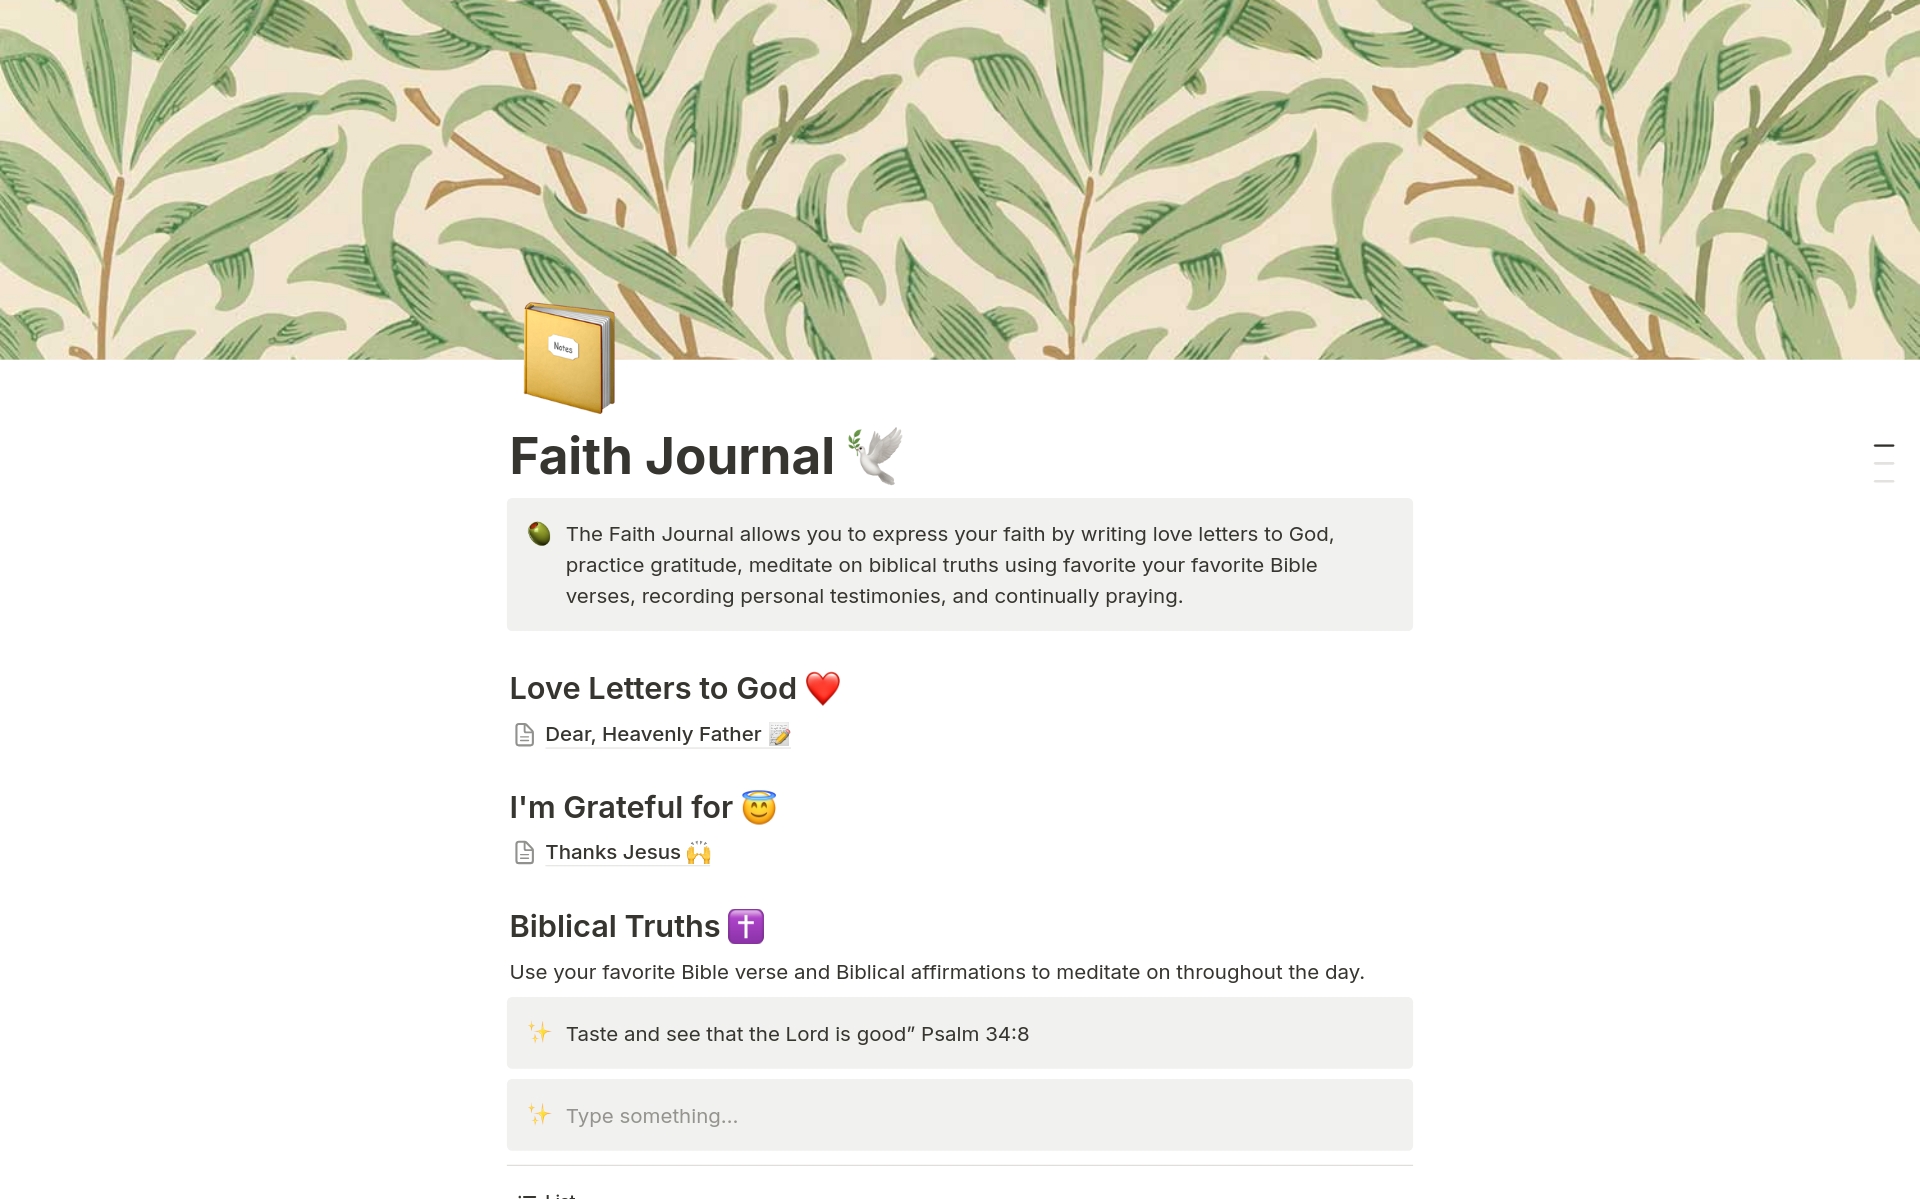 Vista previa de una plantilla para Faith Journal